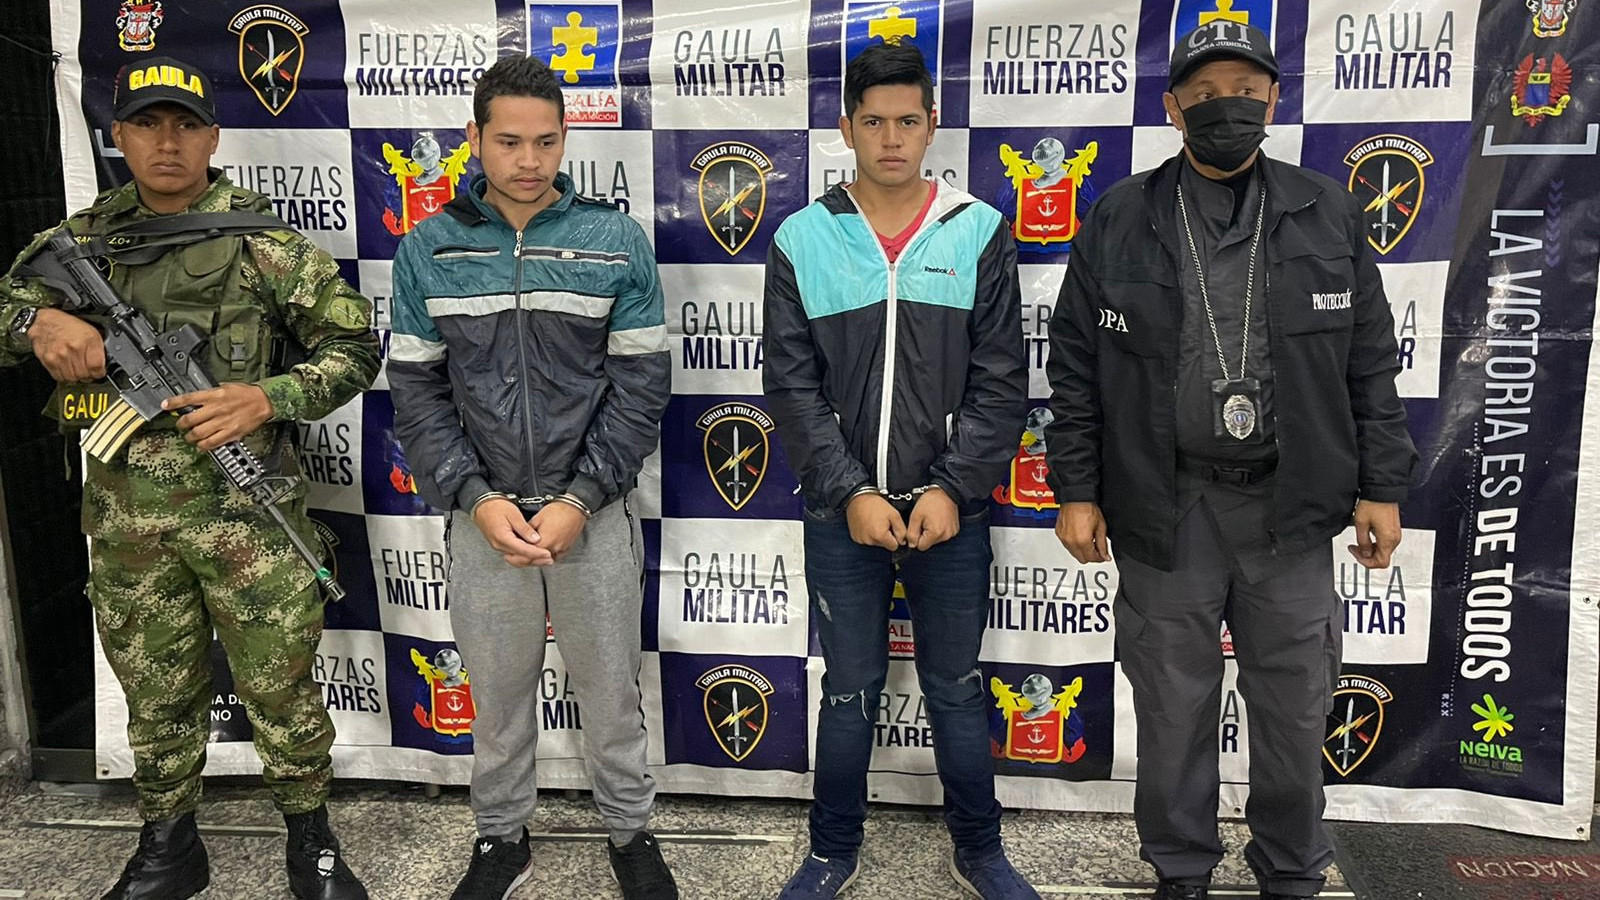  Edwin Ríos Soria y Jobanny Ríos Soria fueron detenidos cuando se encontraban en la localidad de Fontibón, en Bogotá